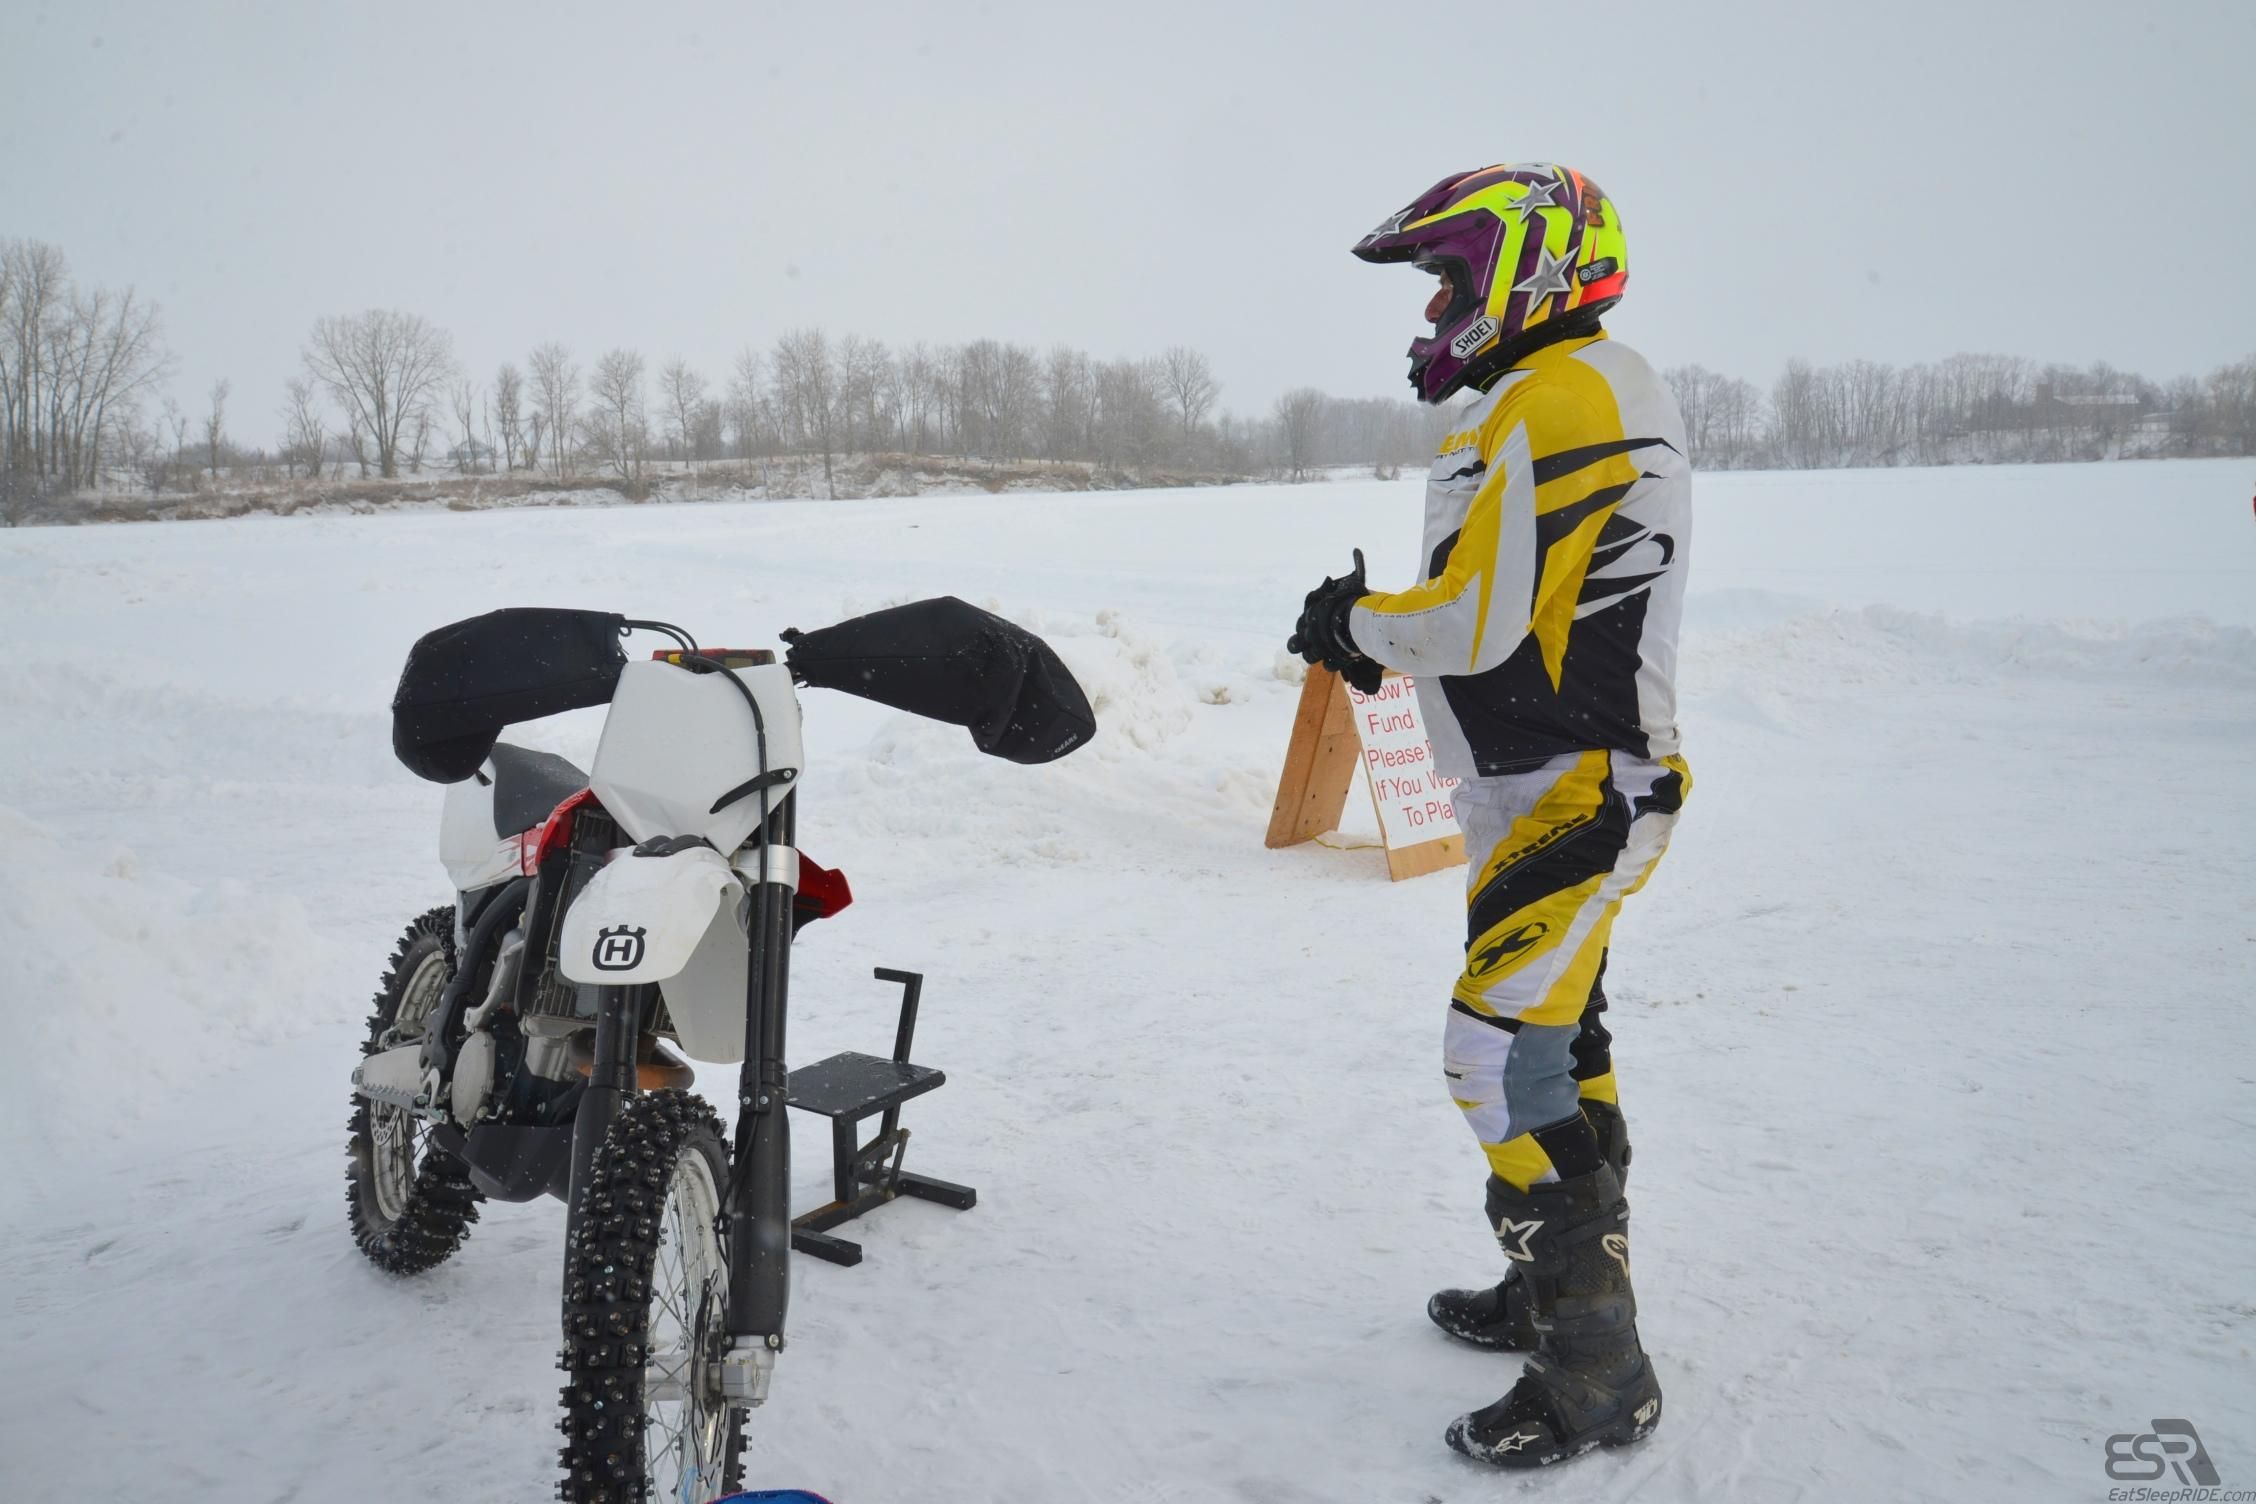 Bob Szoke and the Husky 300 - Ice riding